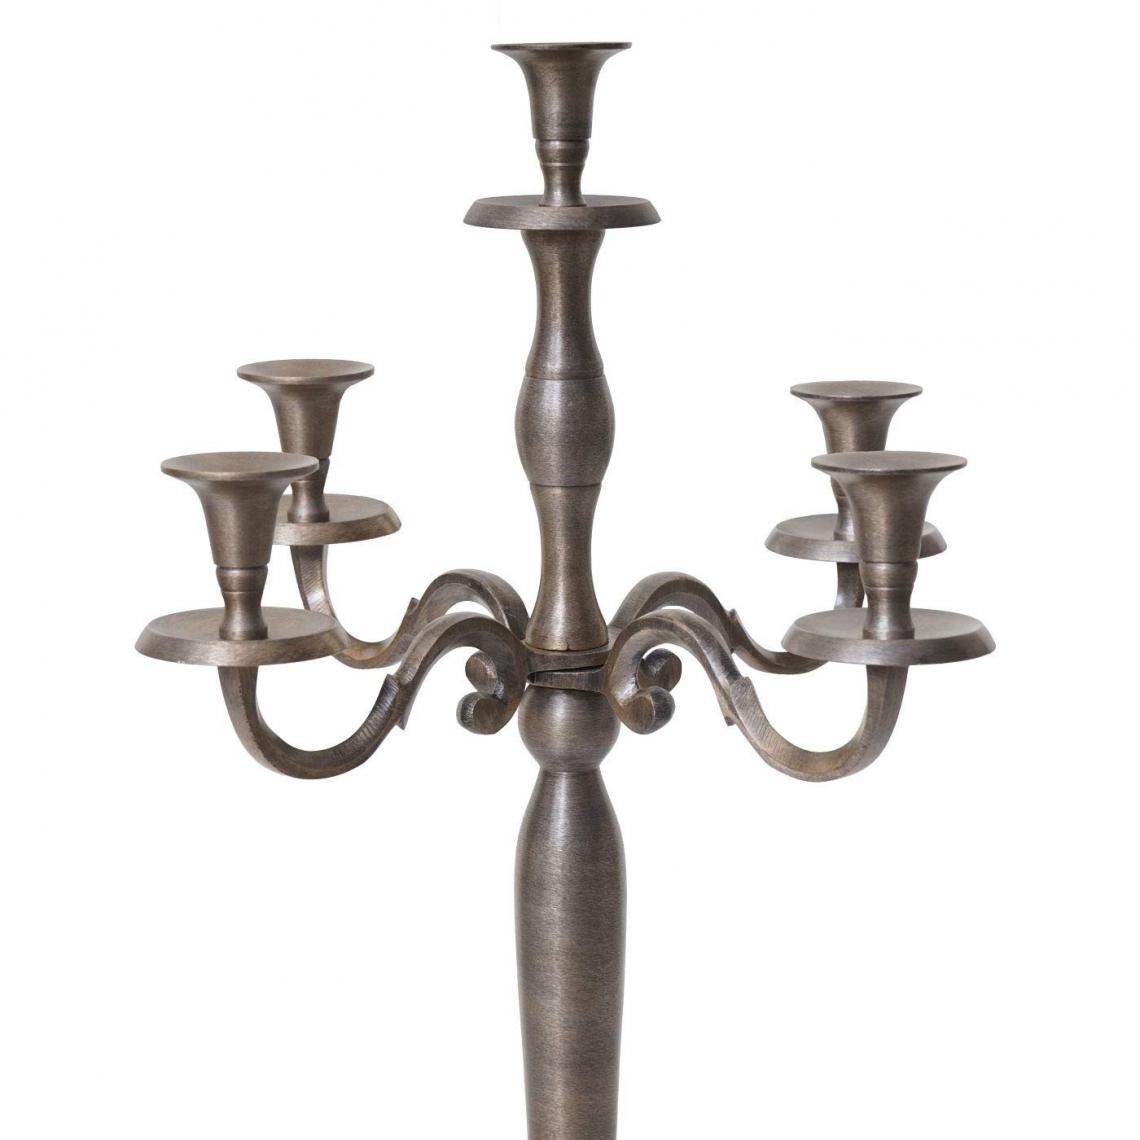 Decoshop26 - Chandelier bougeoirs pour 5 bougies couleur or vieilli hauteur 60 cm DEC04109 - Bougeoirs, chandeliers